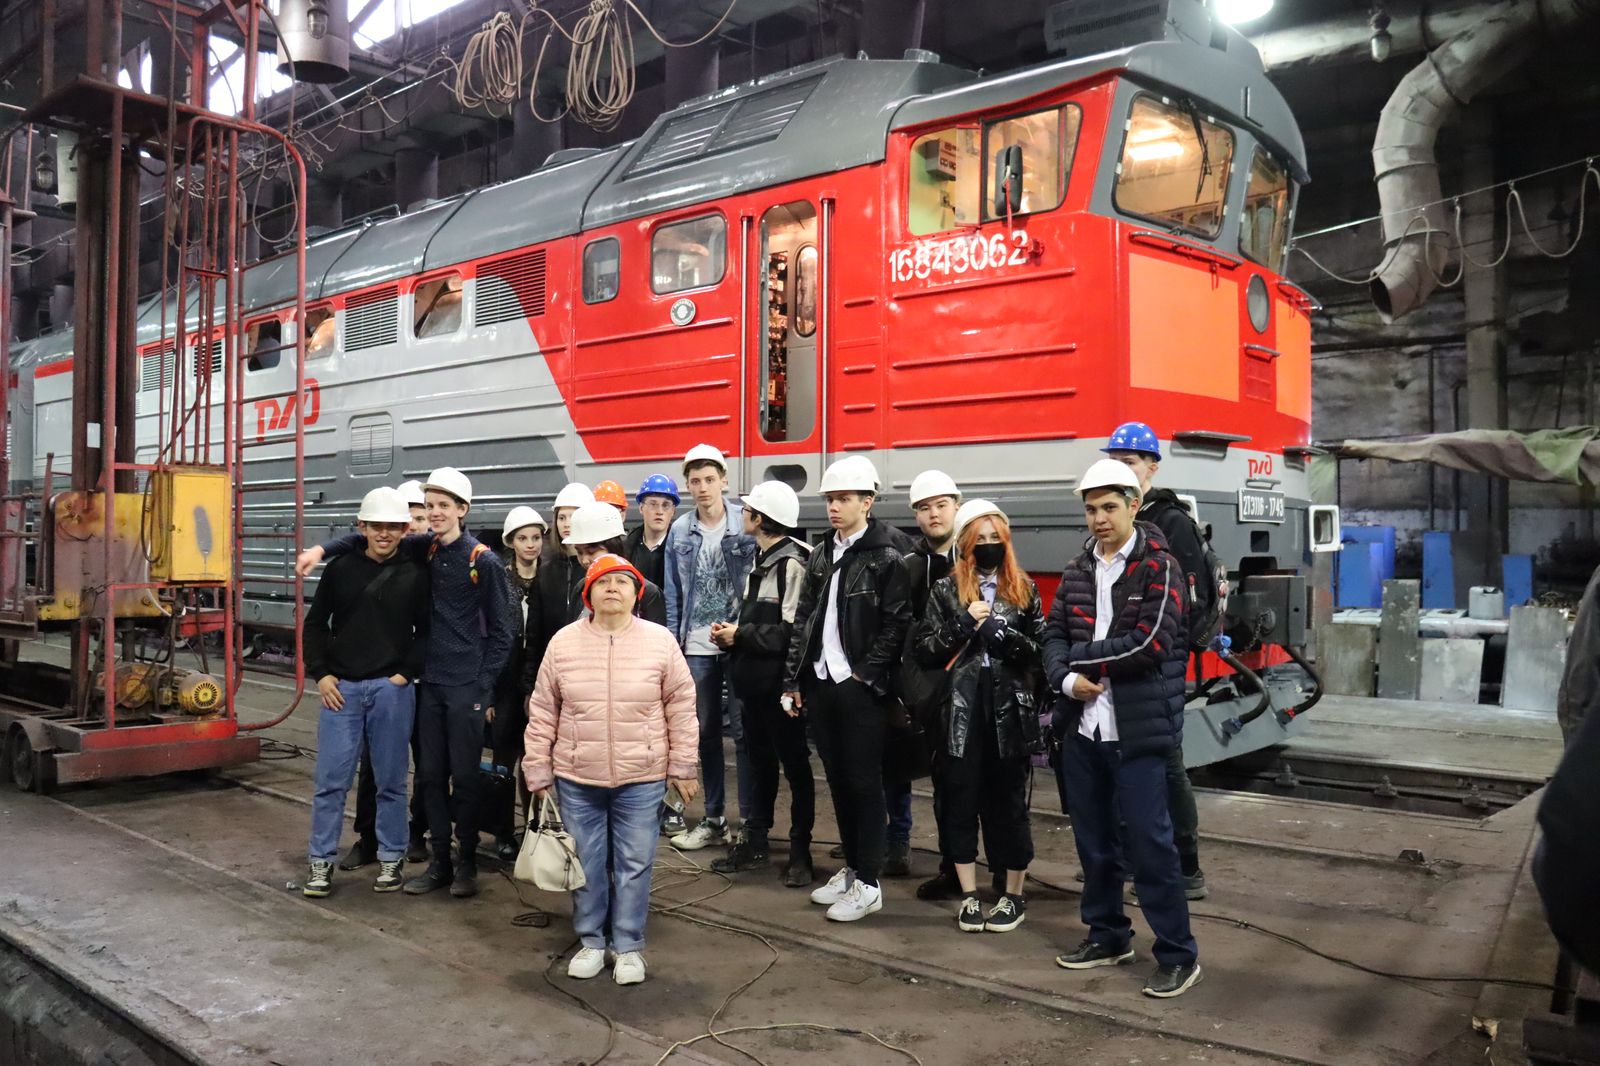 Оренбургский локомотиворемонтный завод